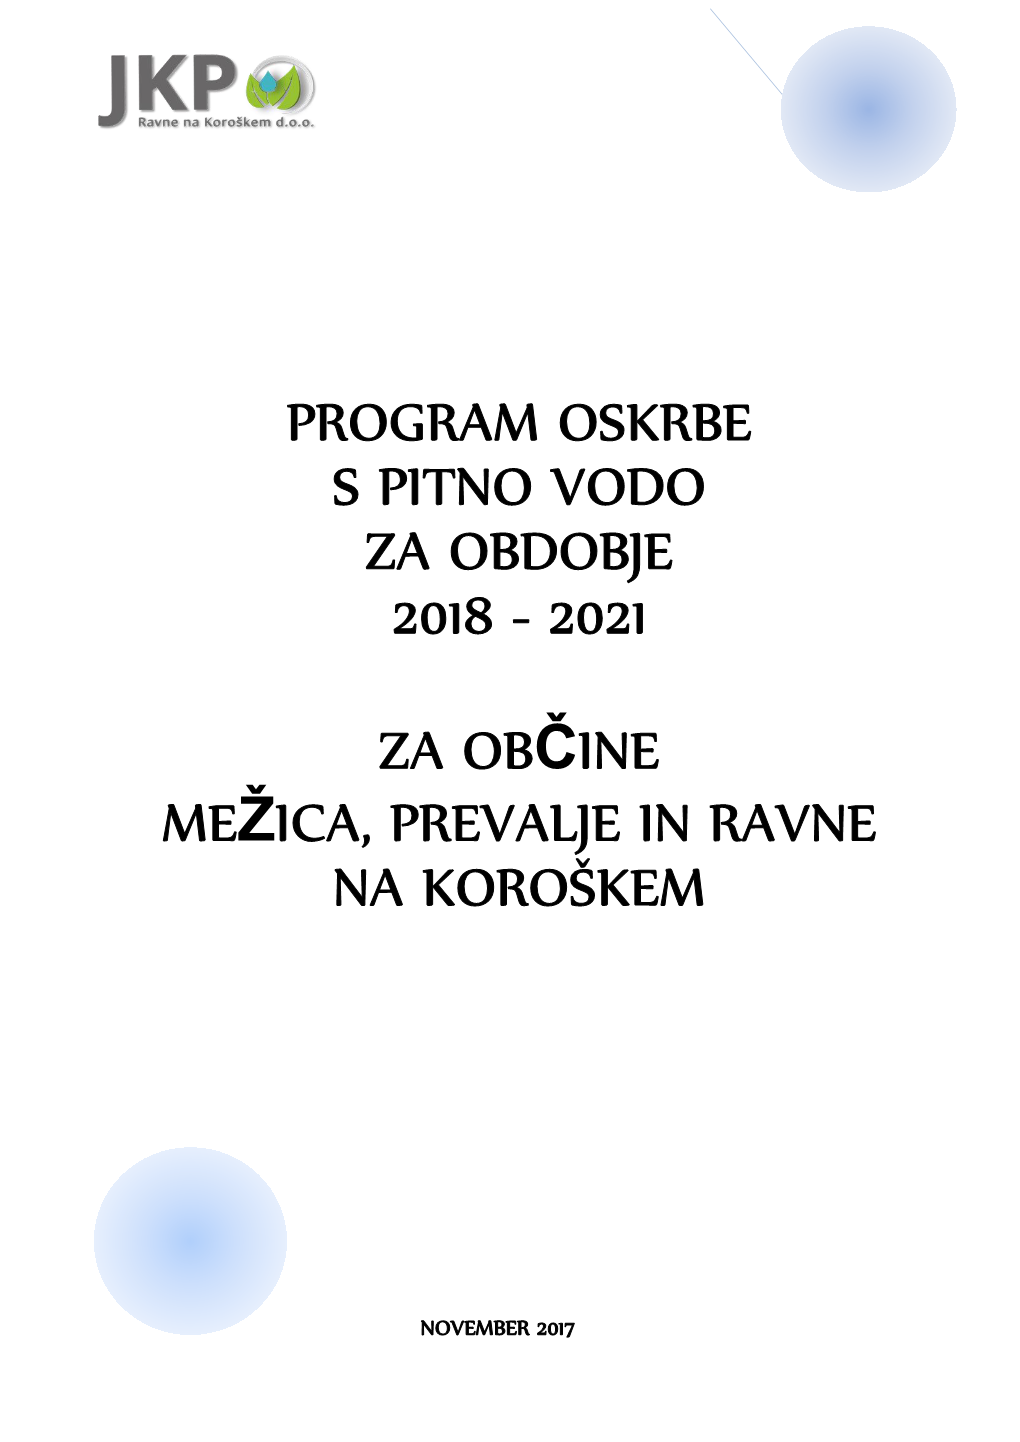 Program Oskrbe S Pitno Vodo Za Obdobje 2018 - 2021